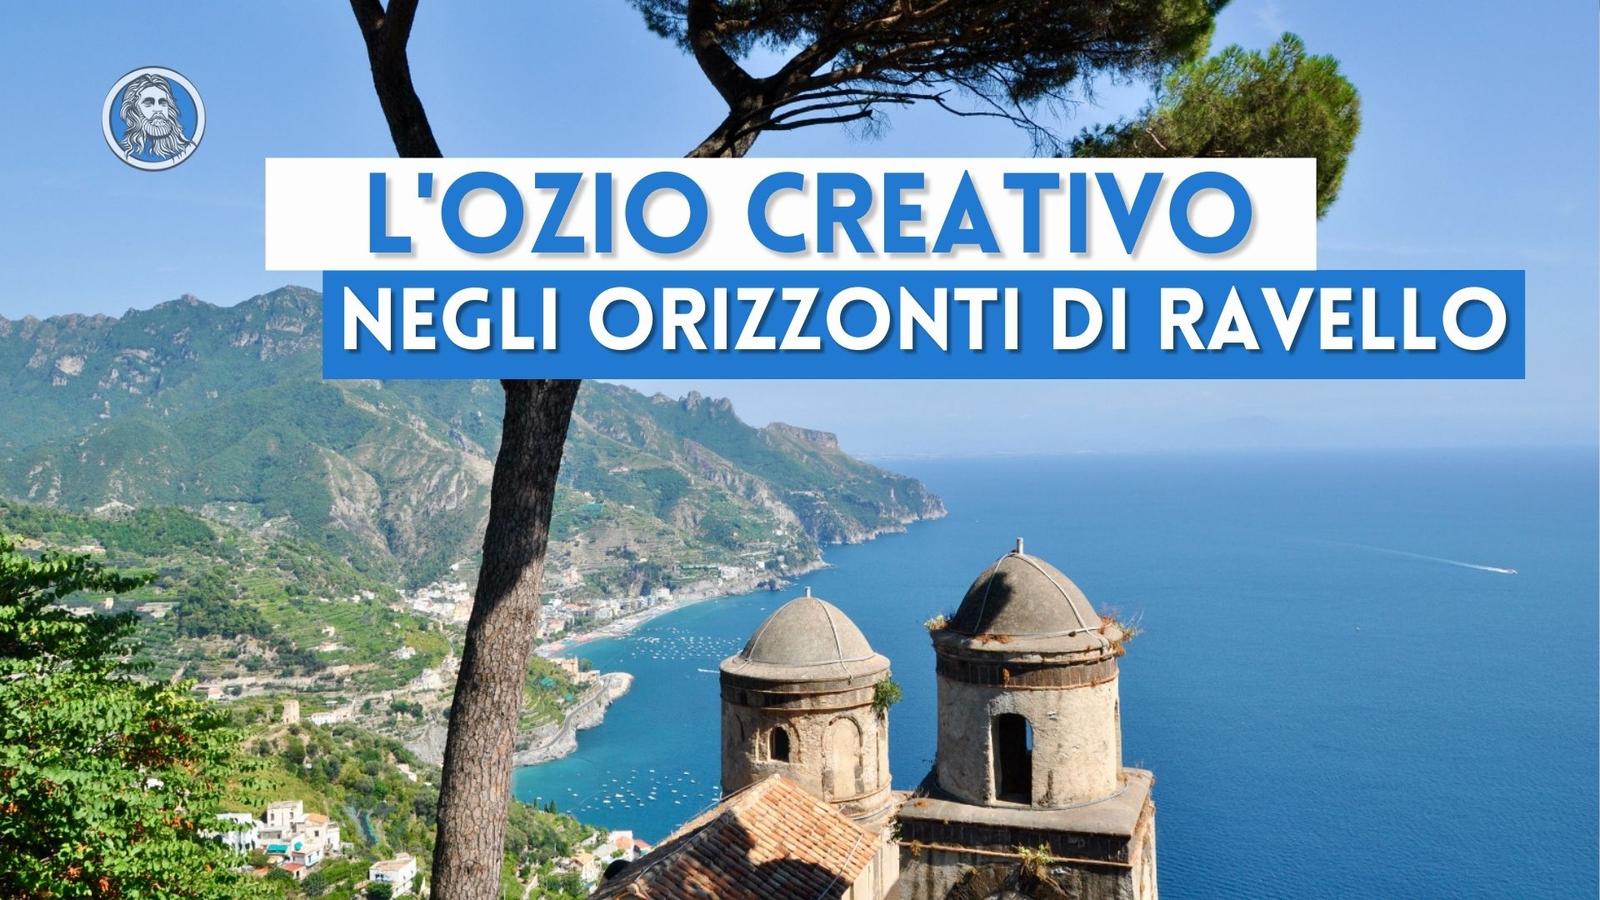 L'ozio creativo di Ravello: artisti, intellettuali e nobili protagonisti del borgo